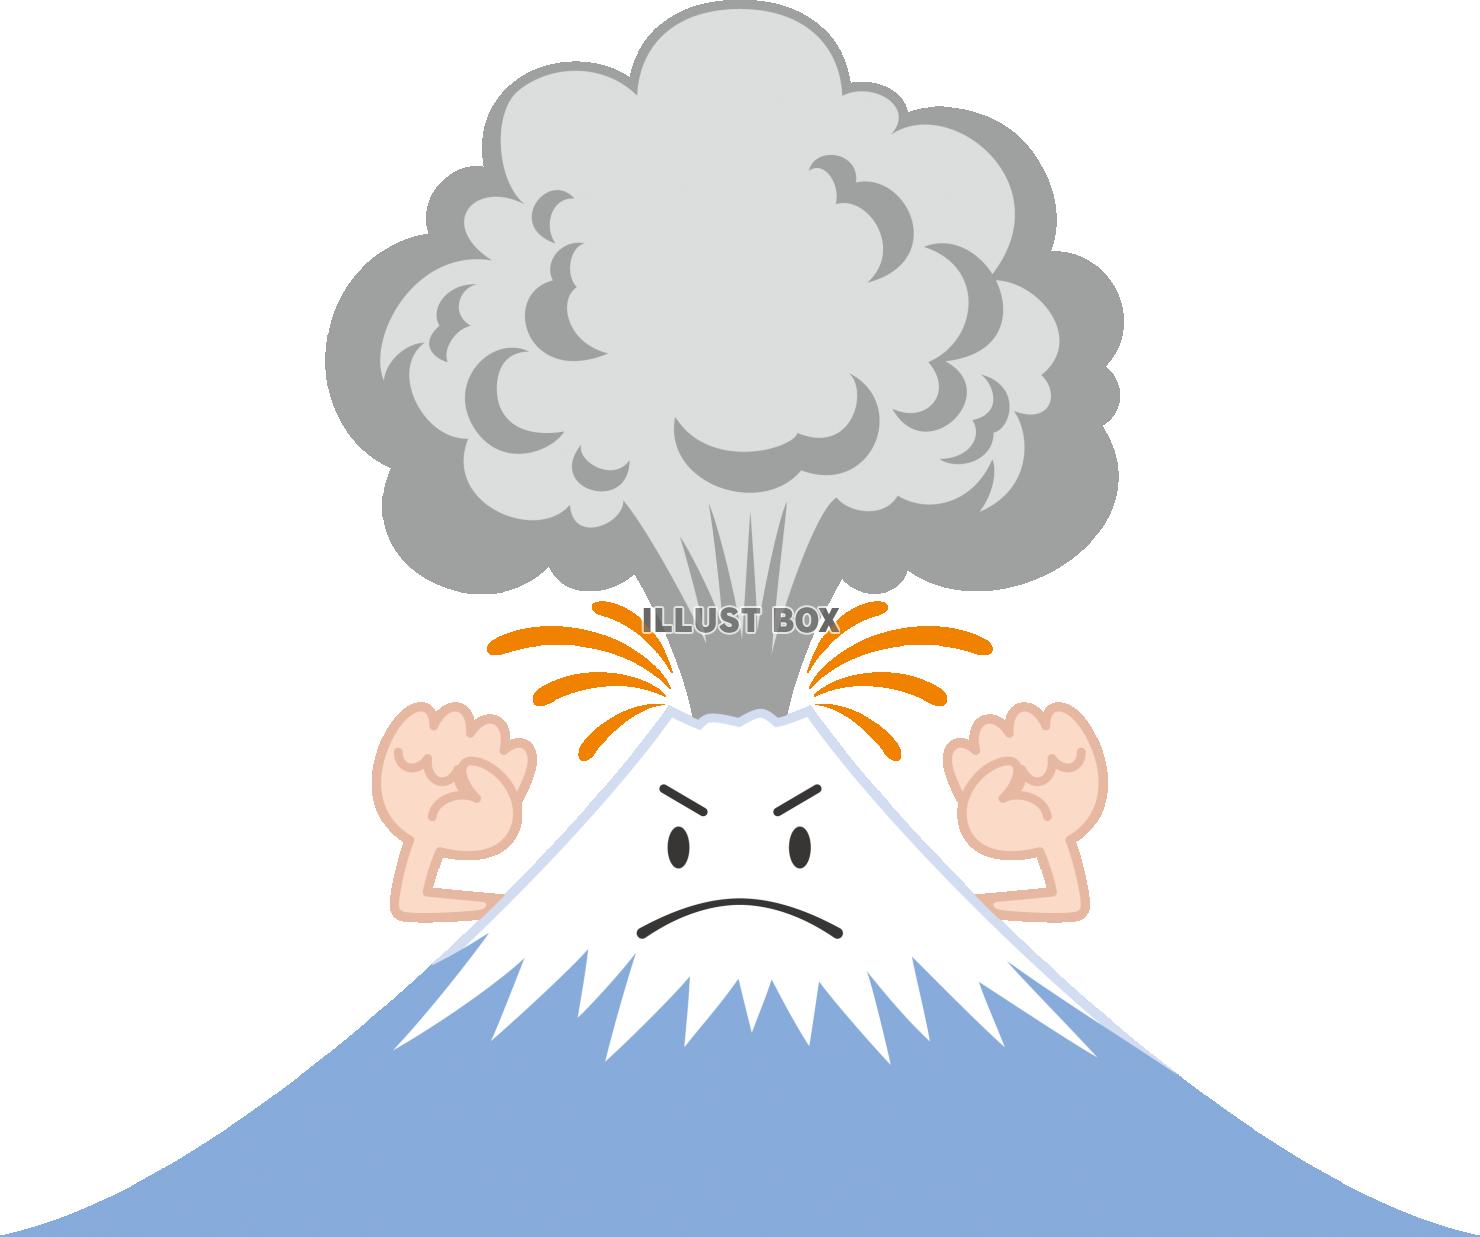 無料イラスト 噴火する火山のキャラクター